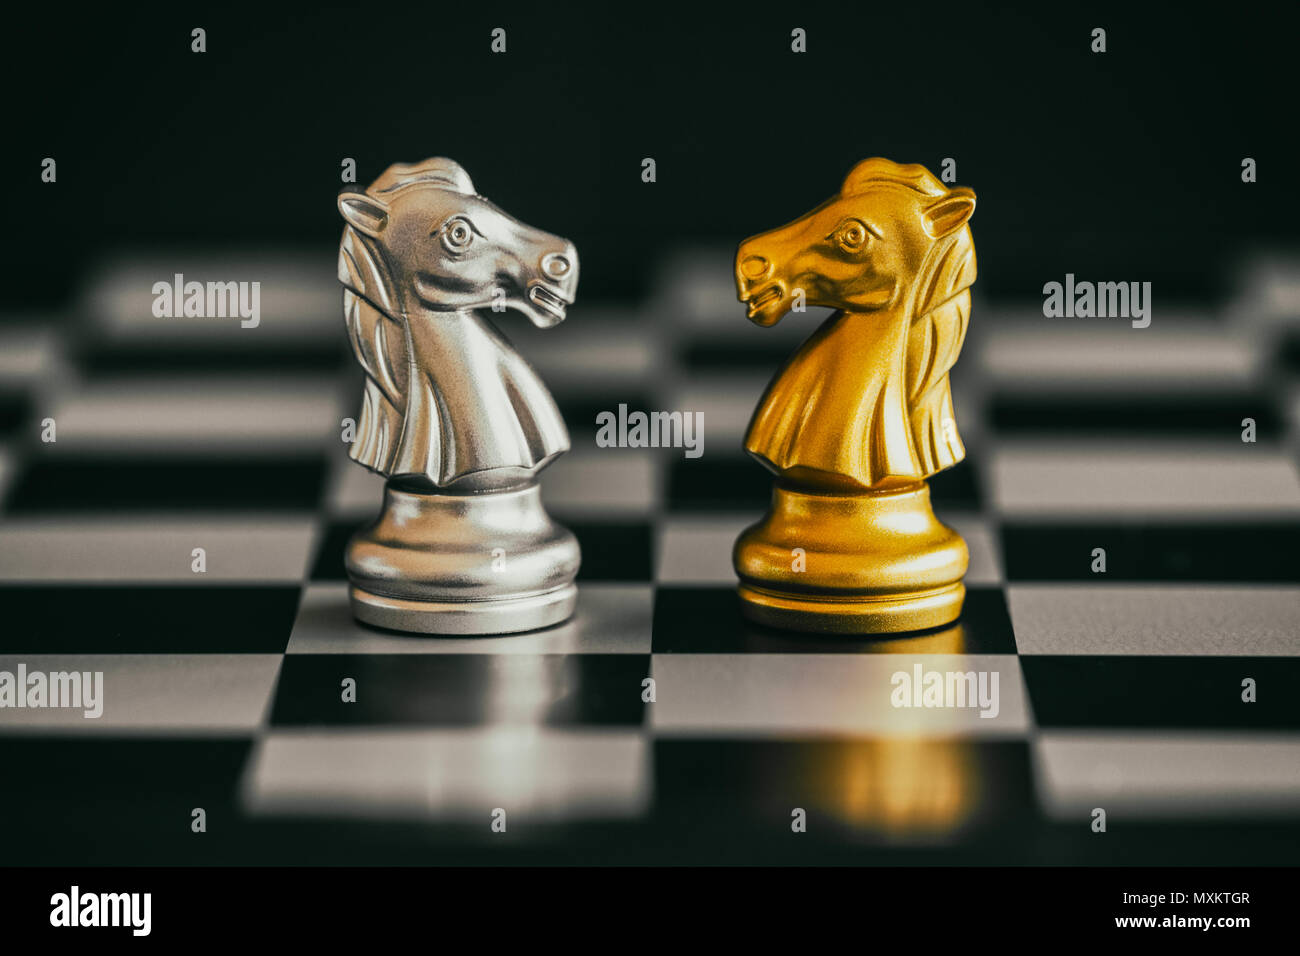 La historia del ajedrez, la milenaria batalla de intelectos